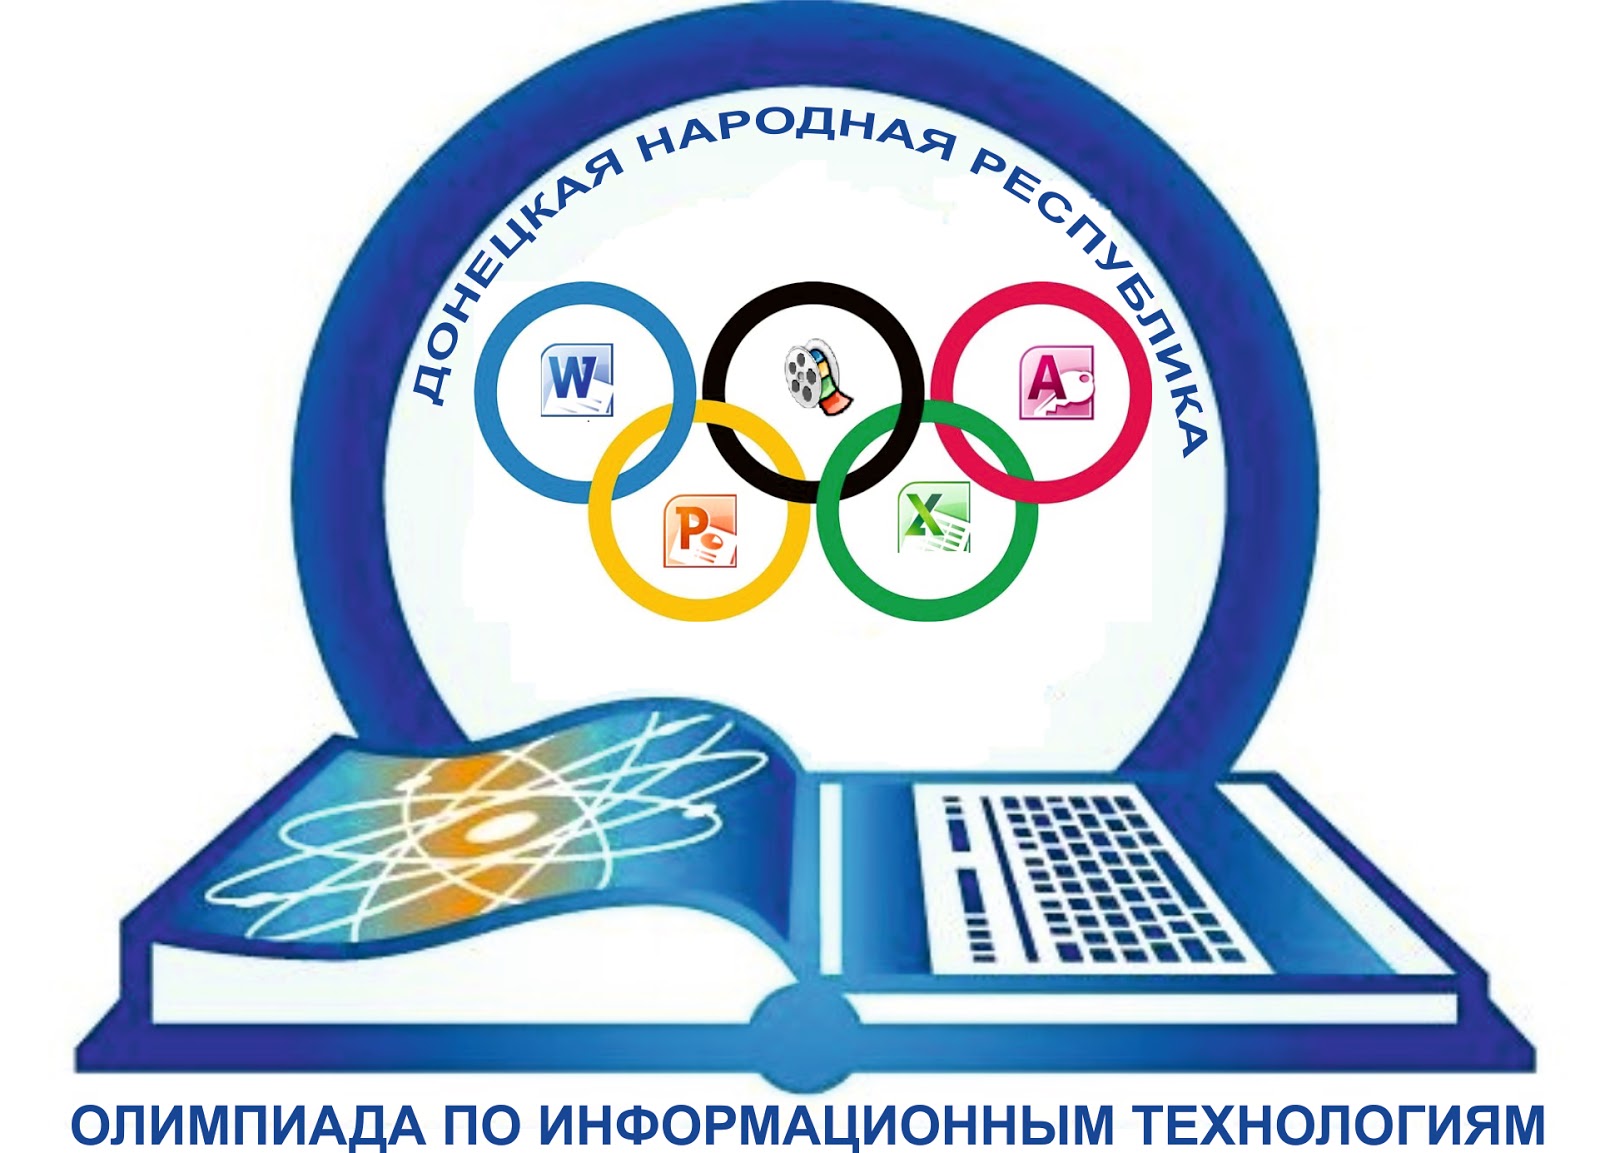 Первый шаг информатика. Логотип олимпиады по информатике. Эмблема математики.